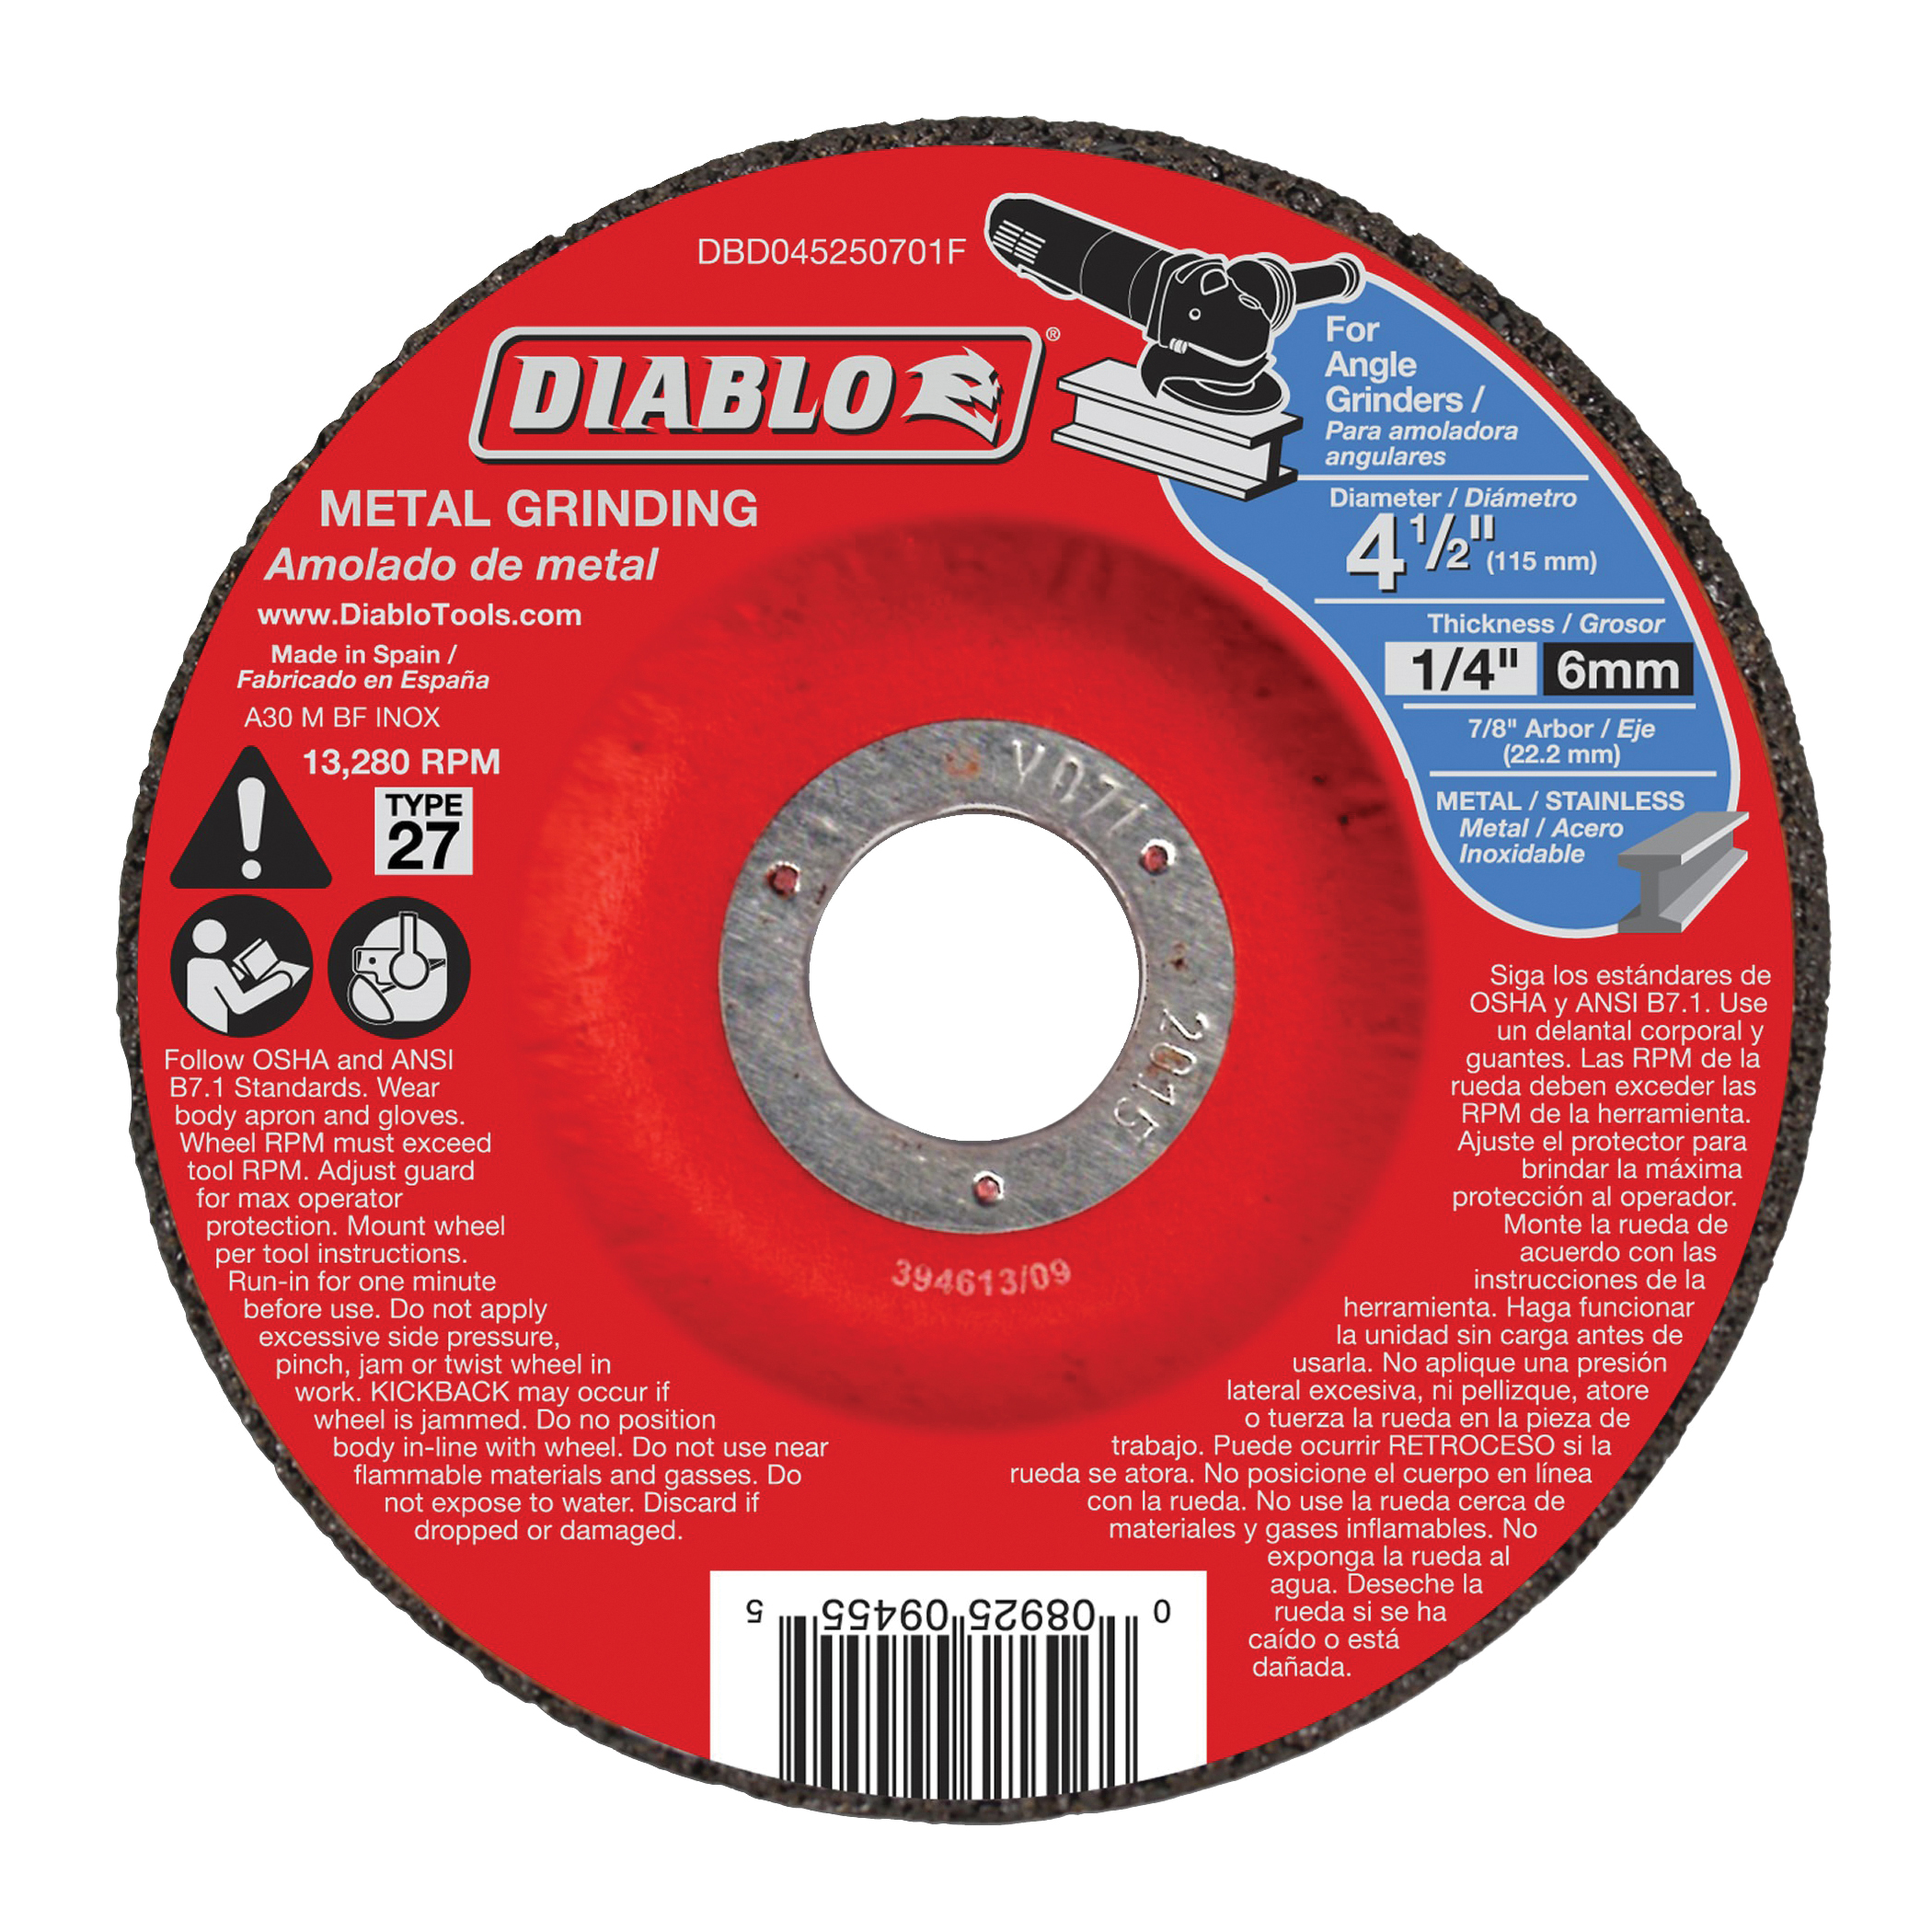 Diablo DBD045250701F